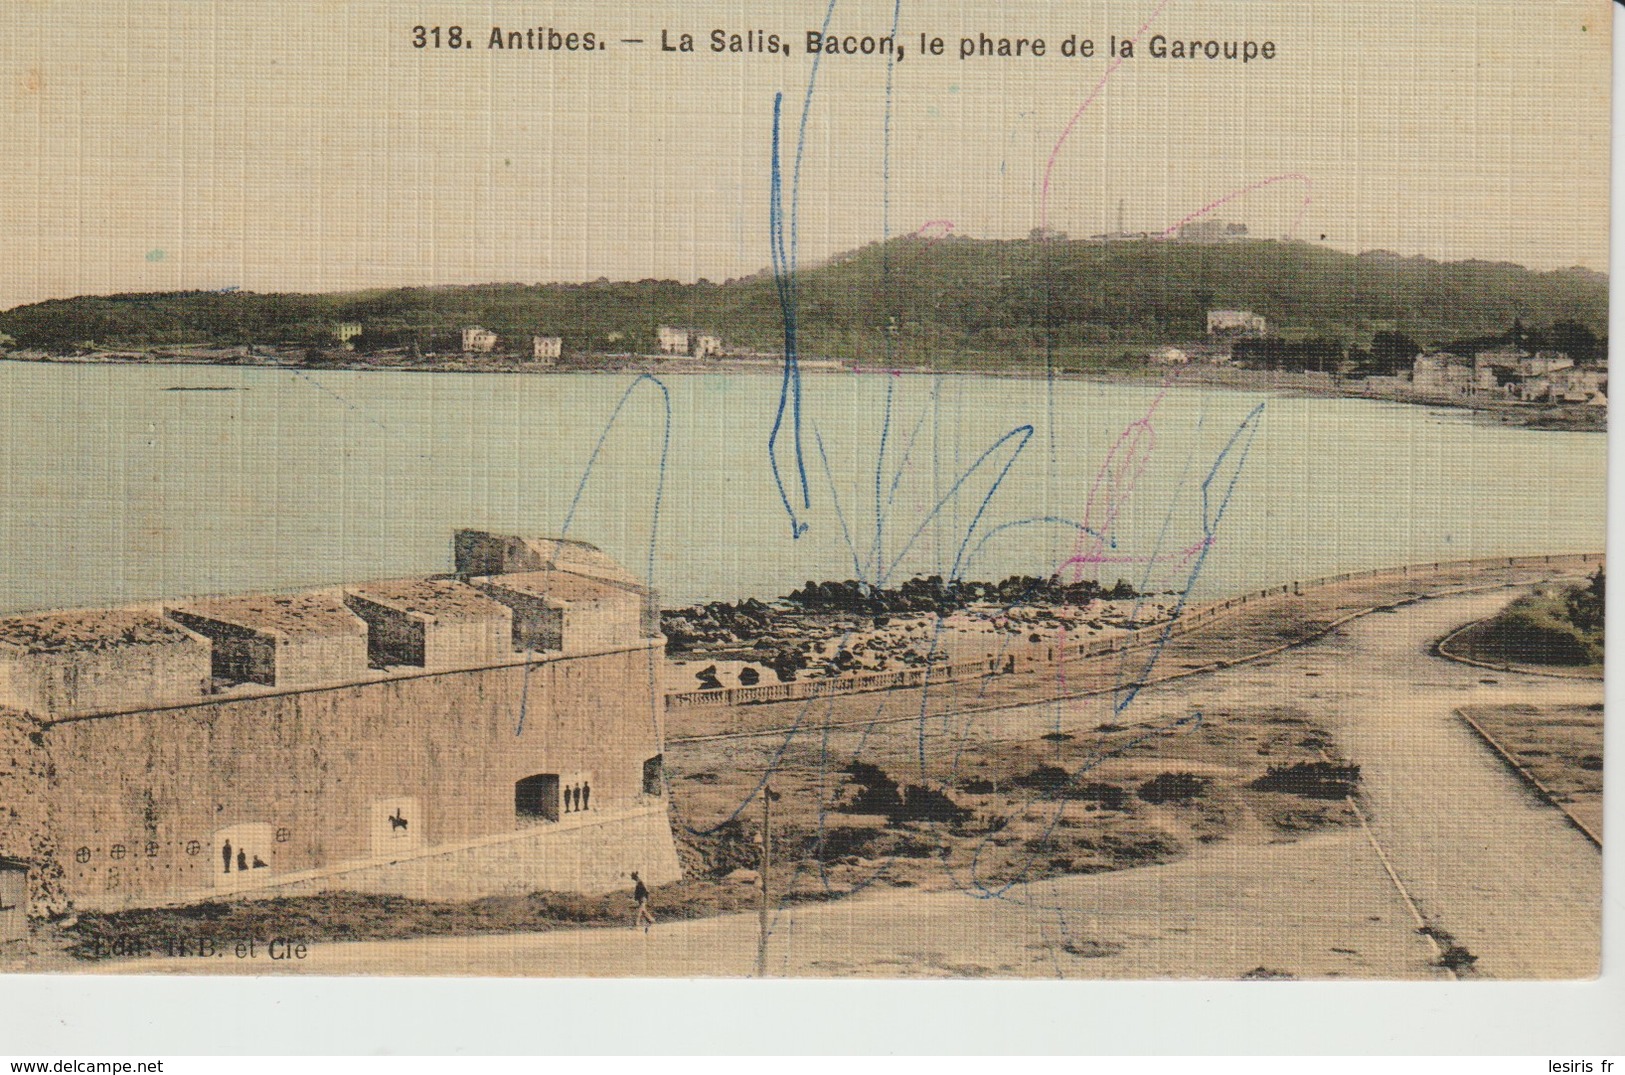 C.P.A. - ANTIBES - LA SALIS - BACON - LE PHARE DE LA GAROUPE - 318 - H. B. - Antibes - Vieille Ville